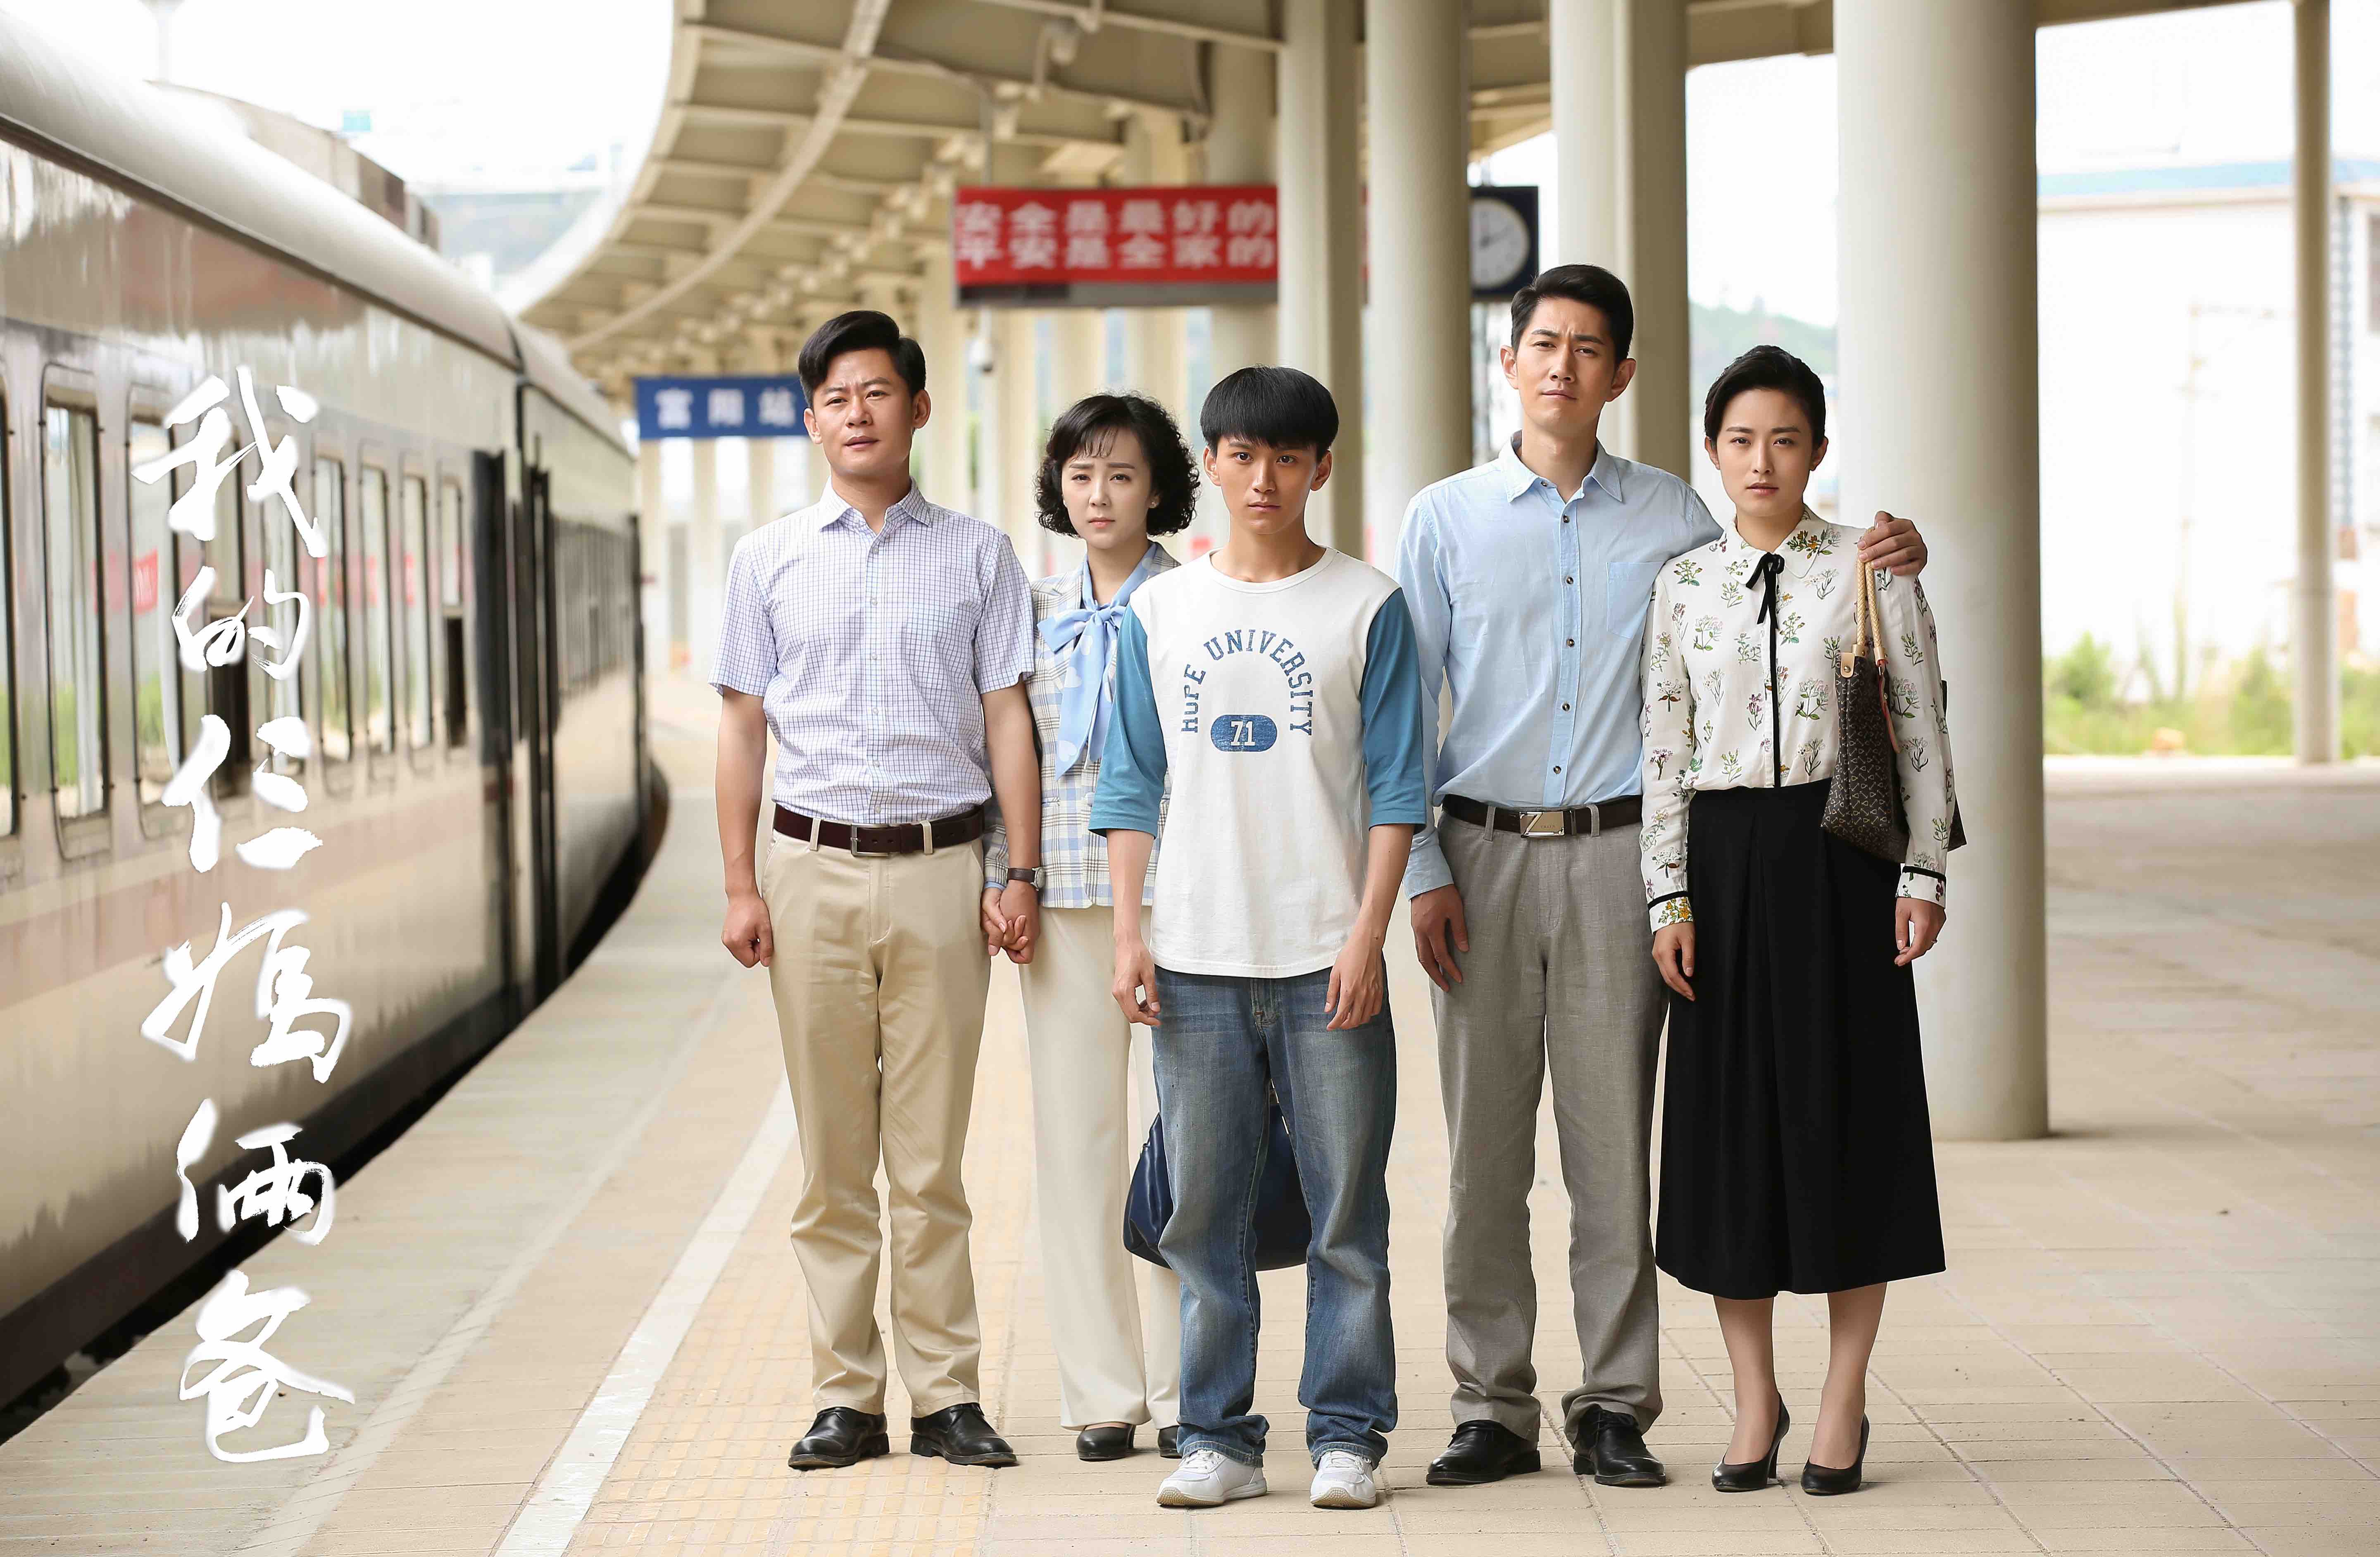 习雪等主演的都市情感剧《我的仨妈俩爸》将于1月14日登陆电视剧频道